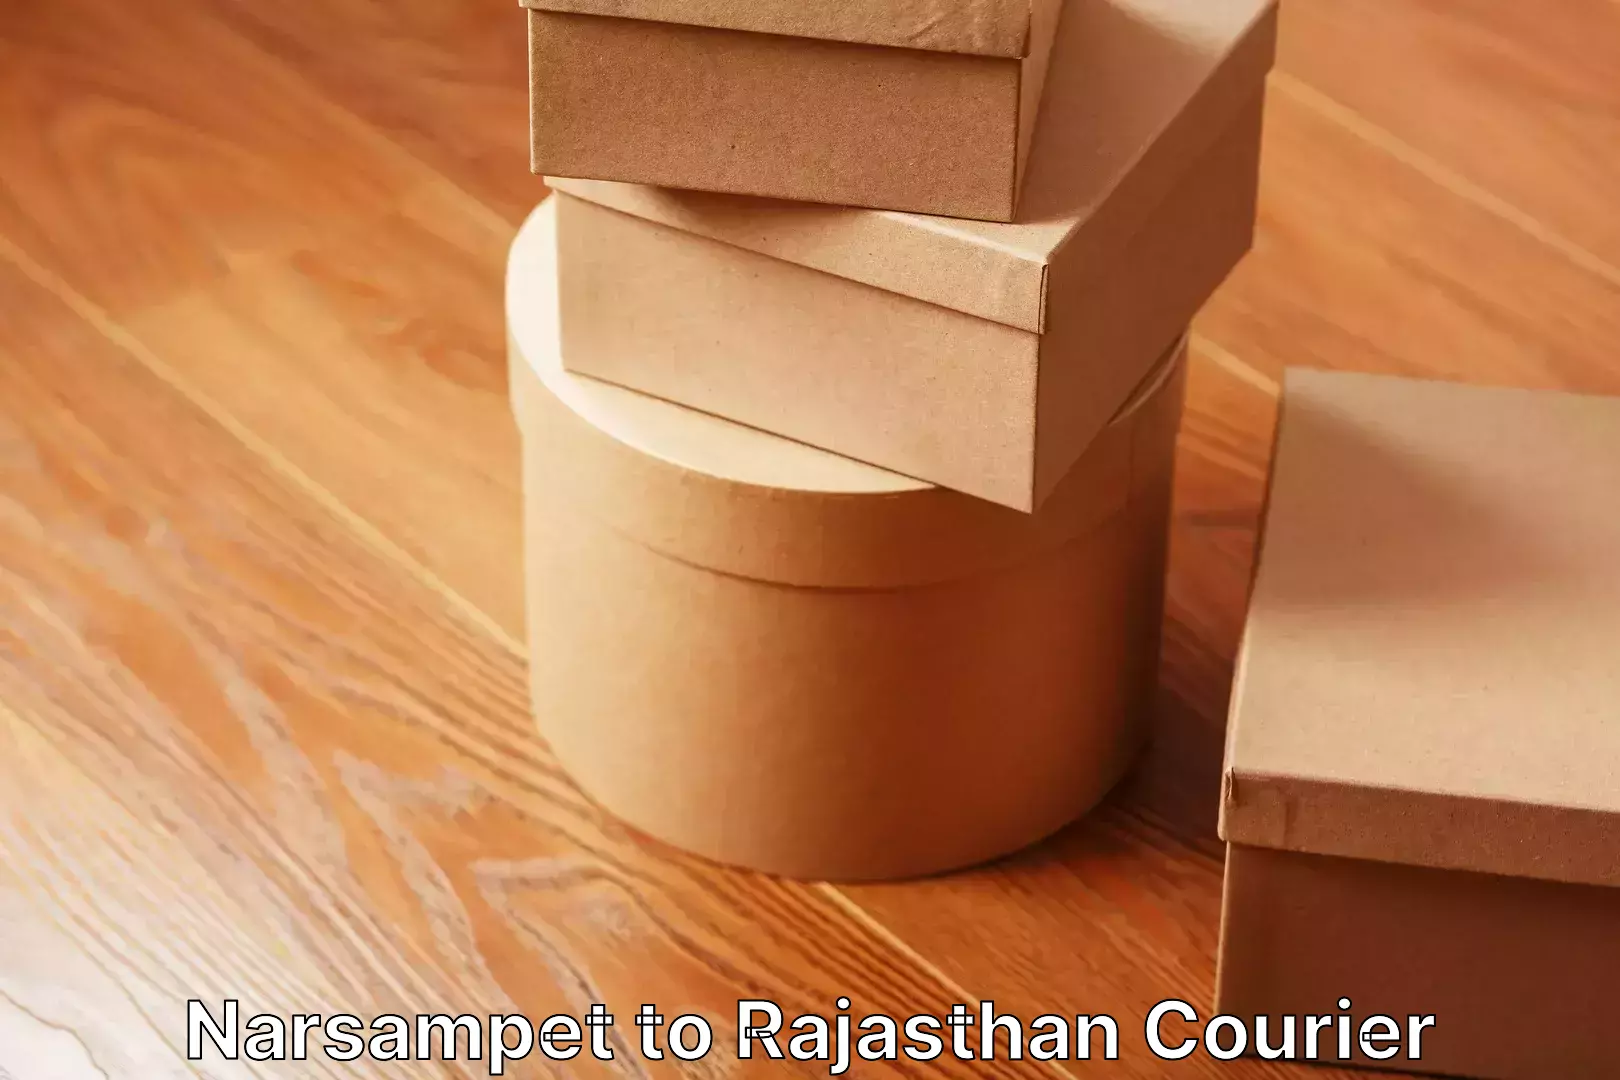 Furniture transport company Narsampet to Rajasthan